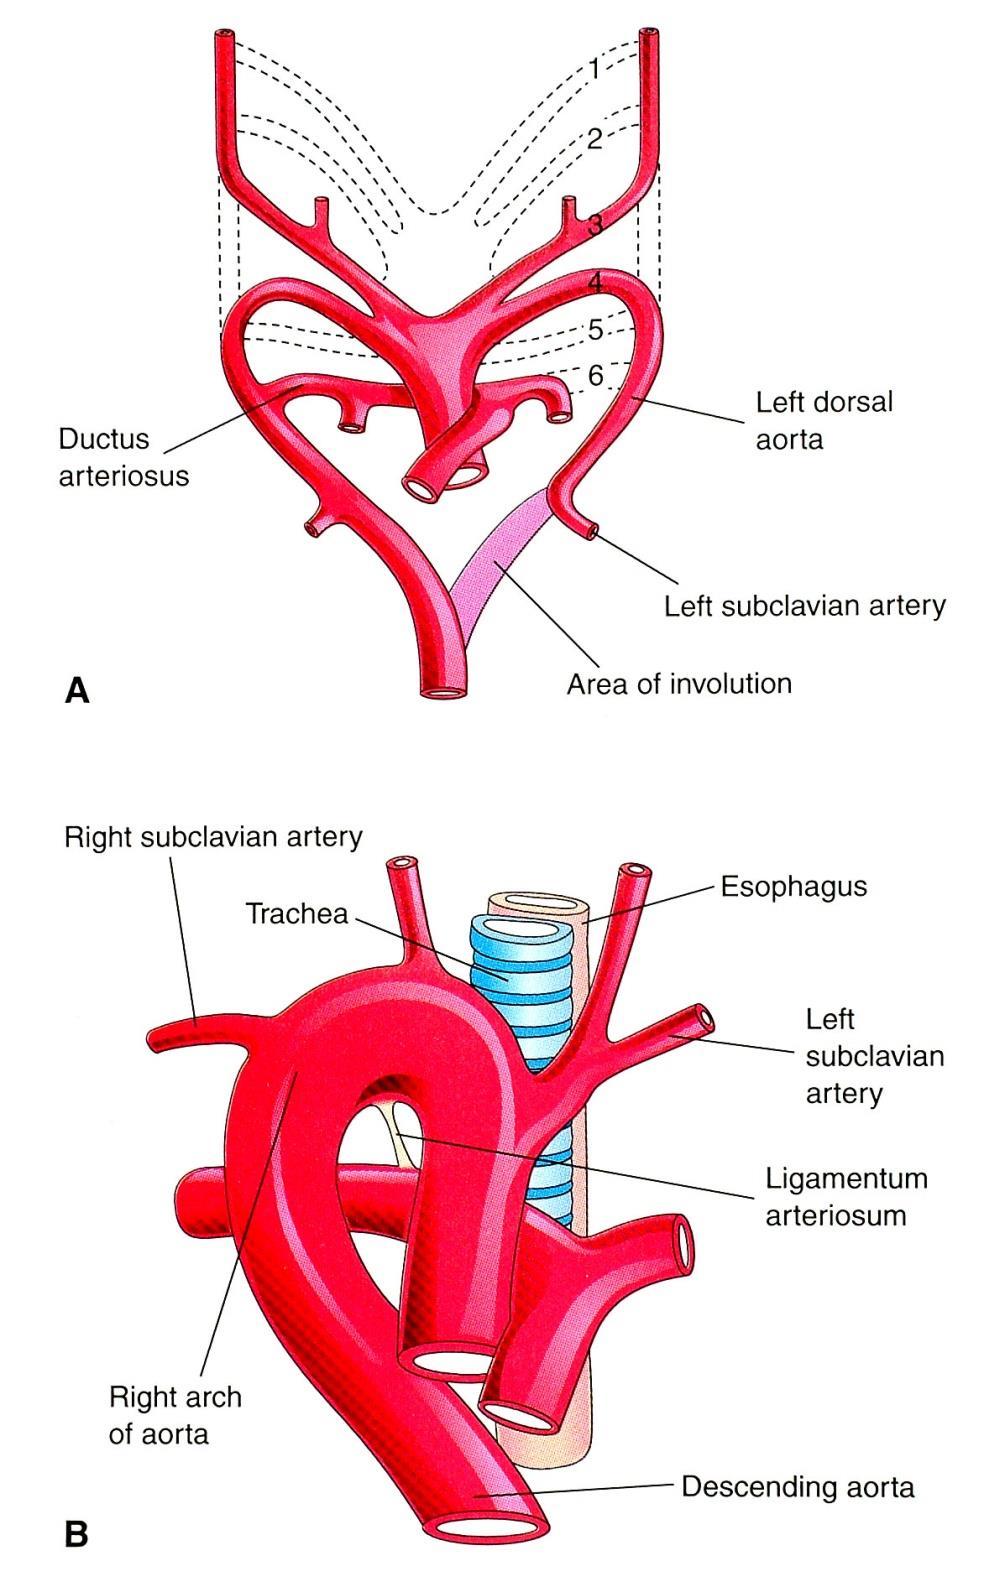 Right arch of aorta Area